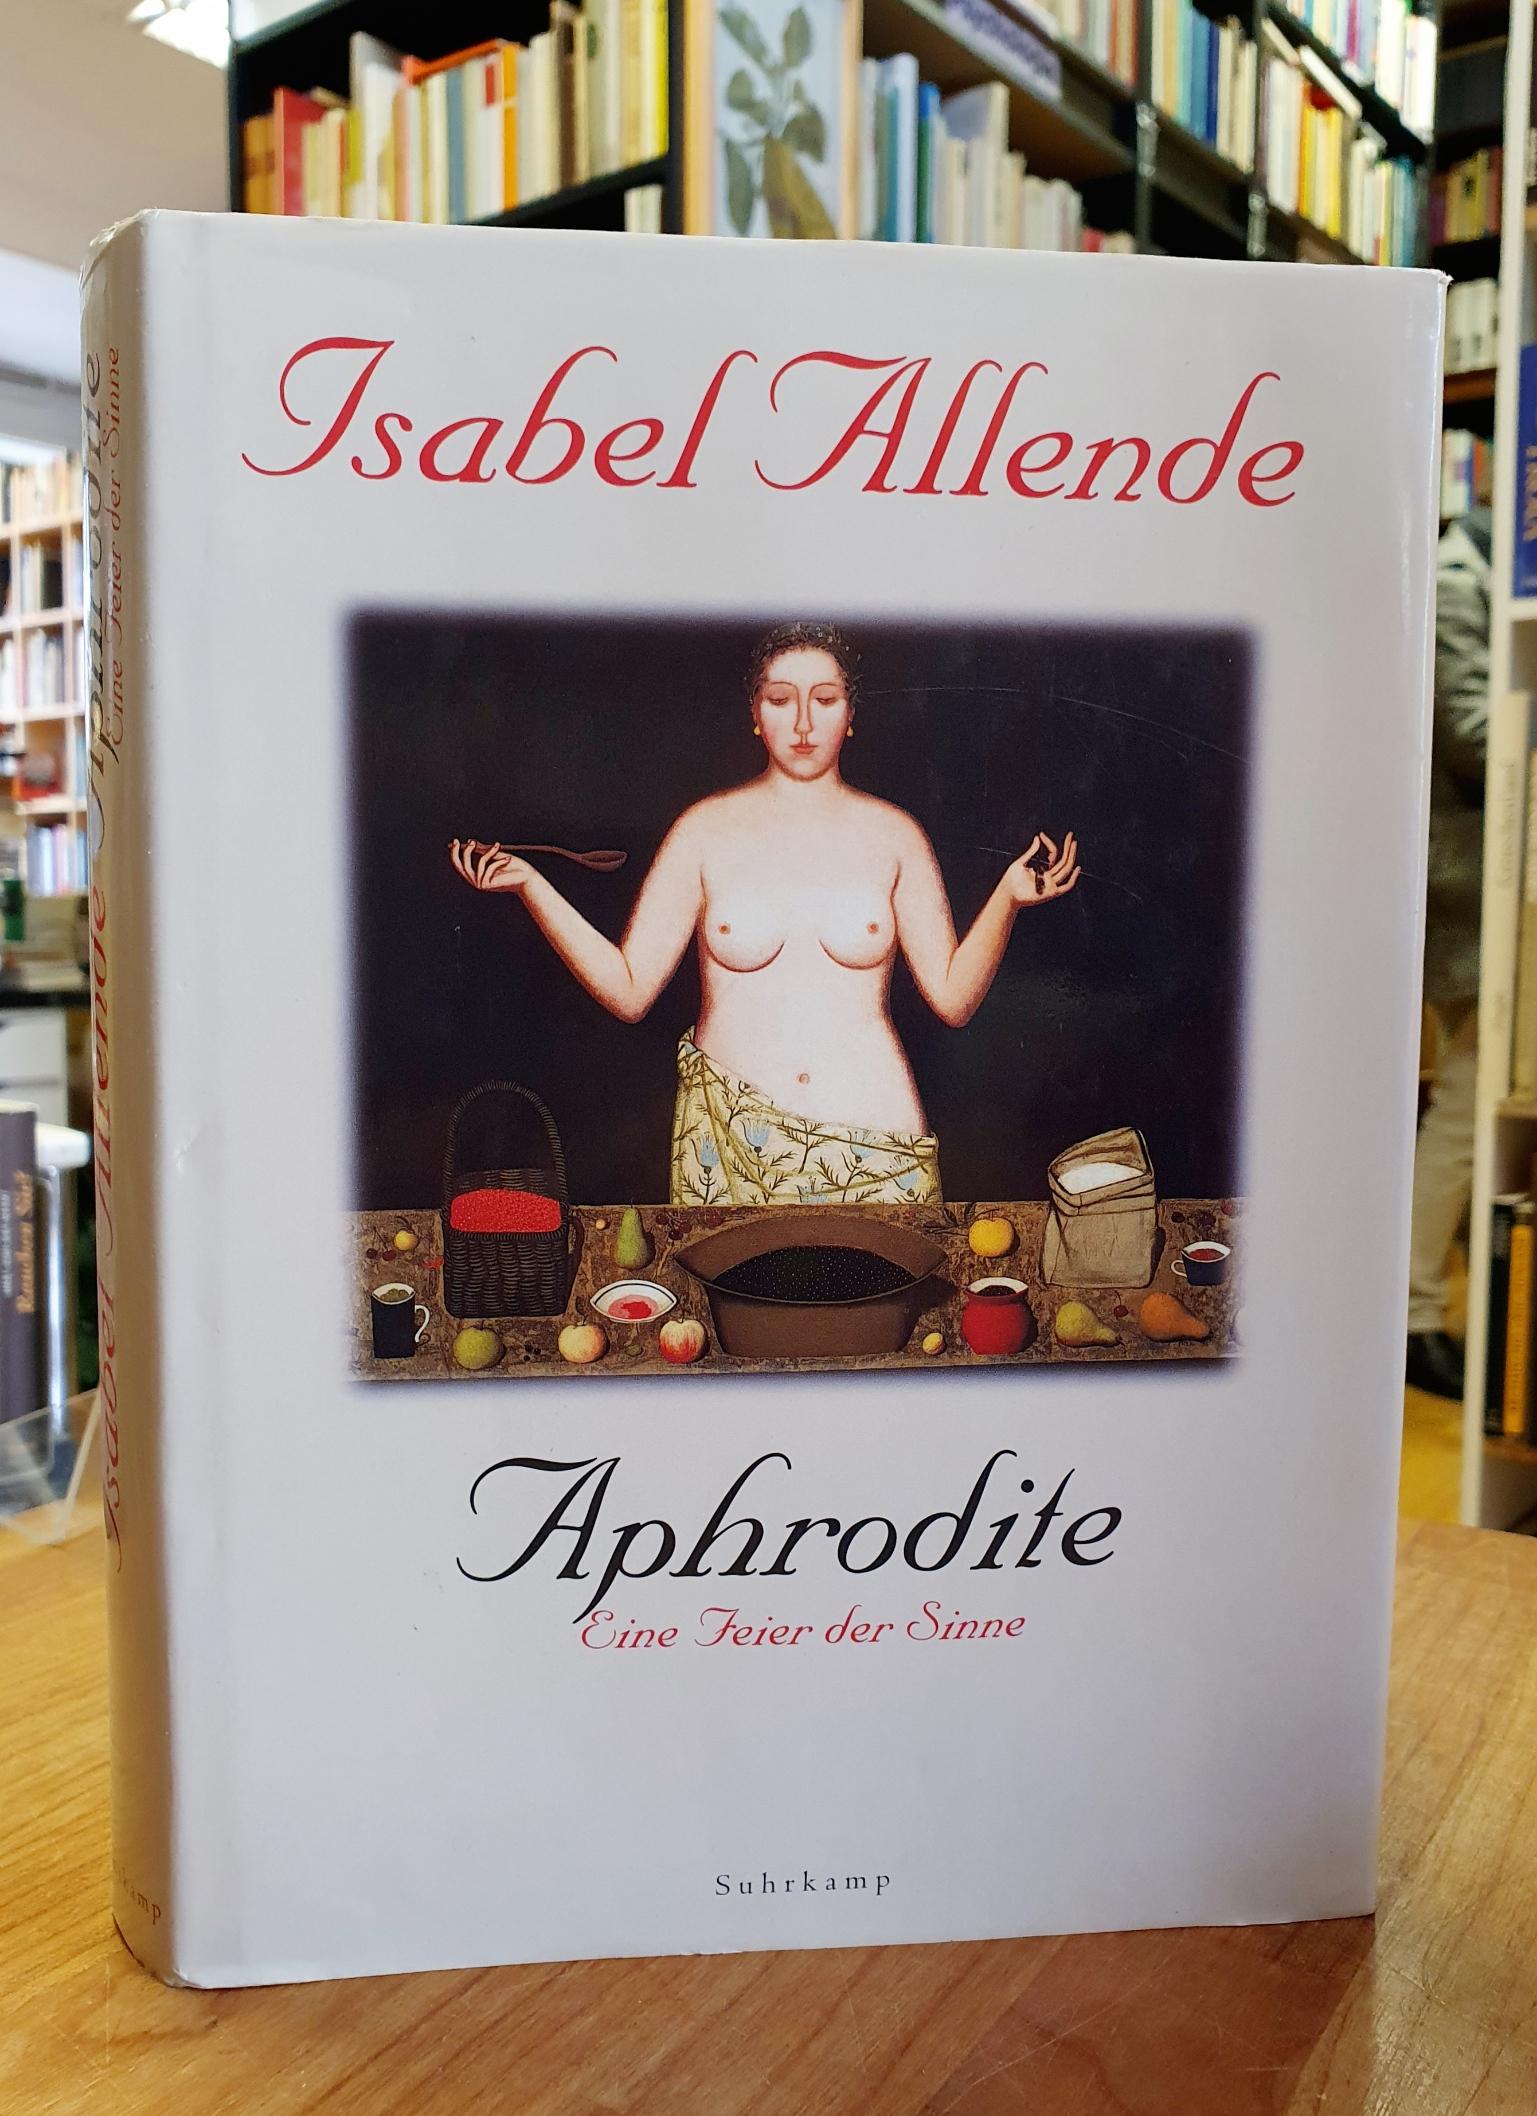 Allende, Aphrodite – Eine Feier der Sinne,